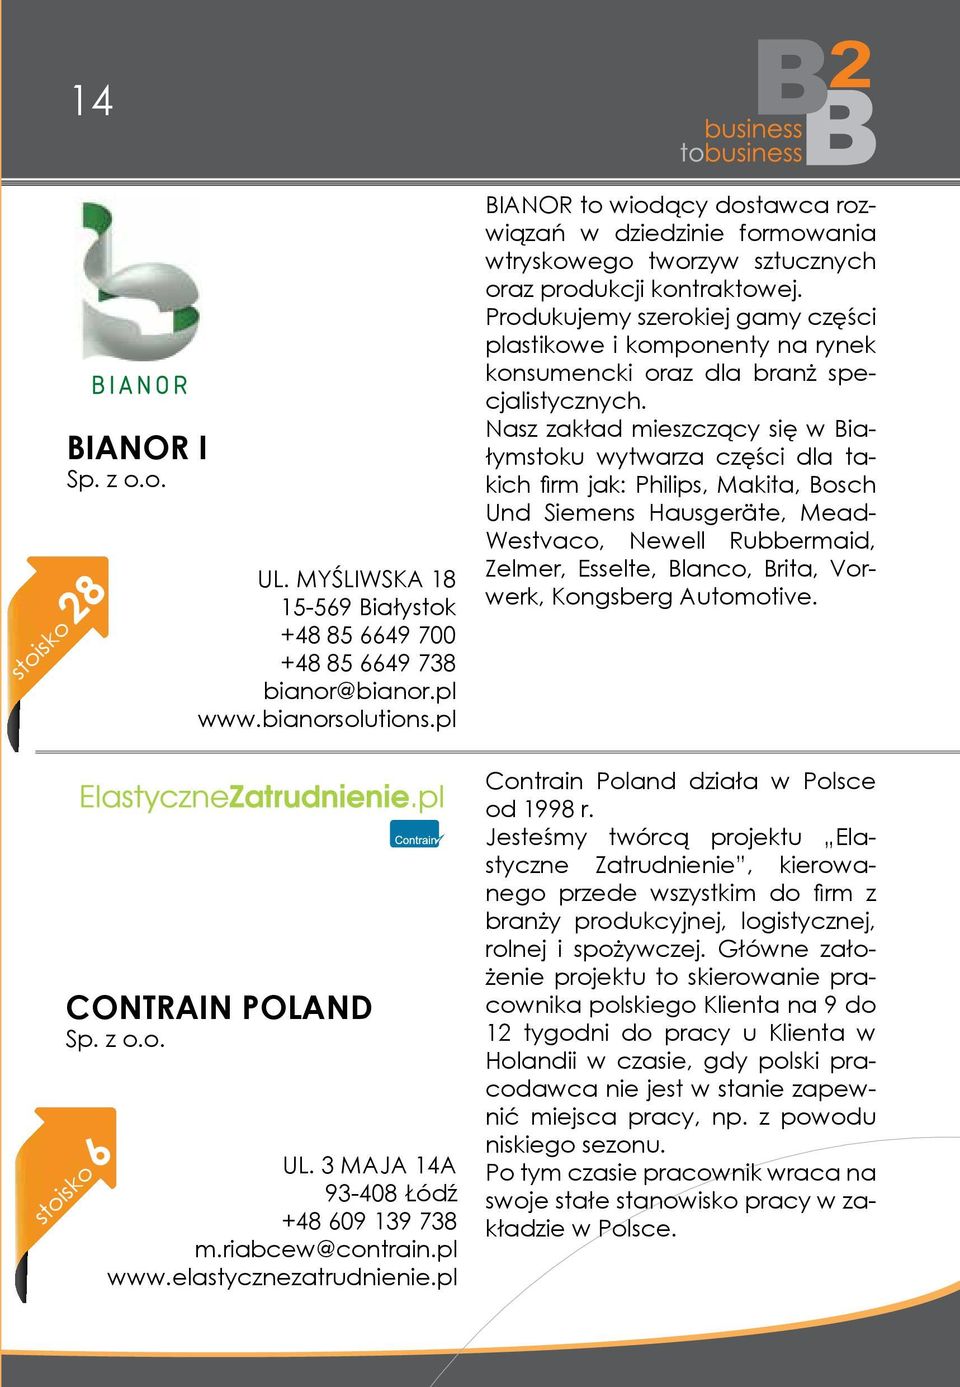 pl BIANOR to wiodący dostawca rozwiązań w dziedzinie formowania wtryskowego tworzyw sztucznych oraz produkcji kontraktowej.